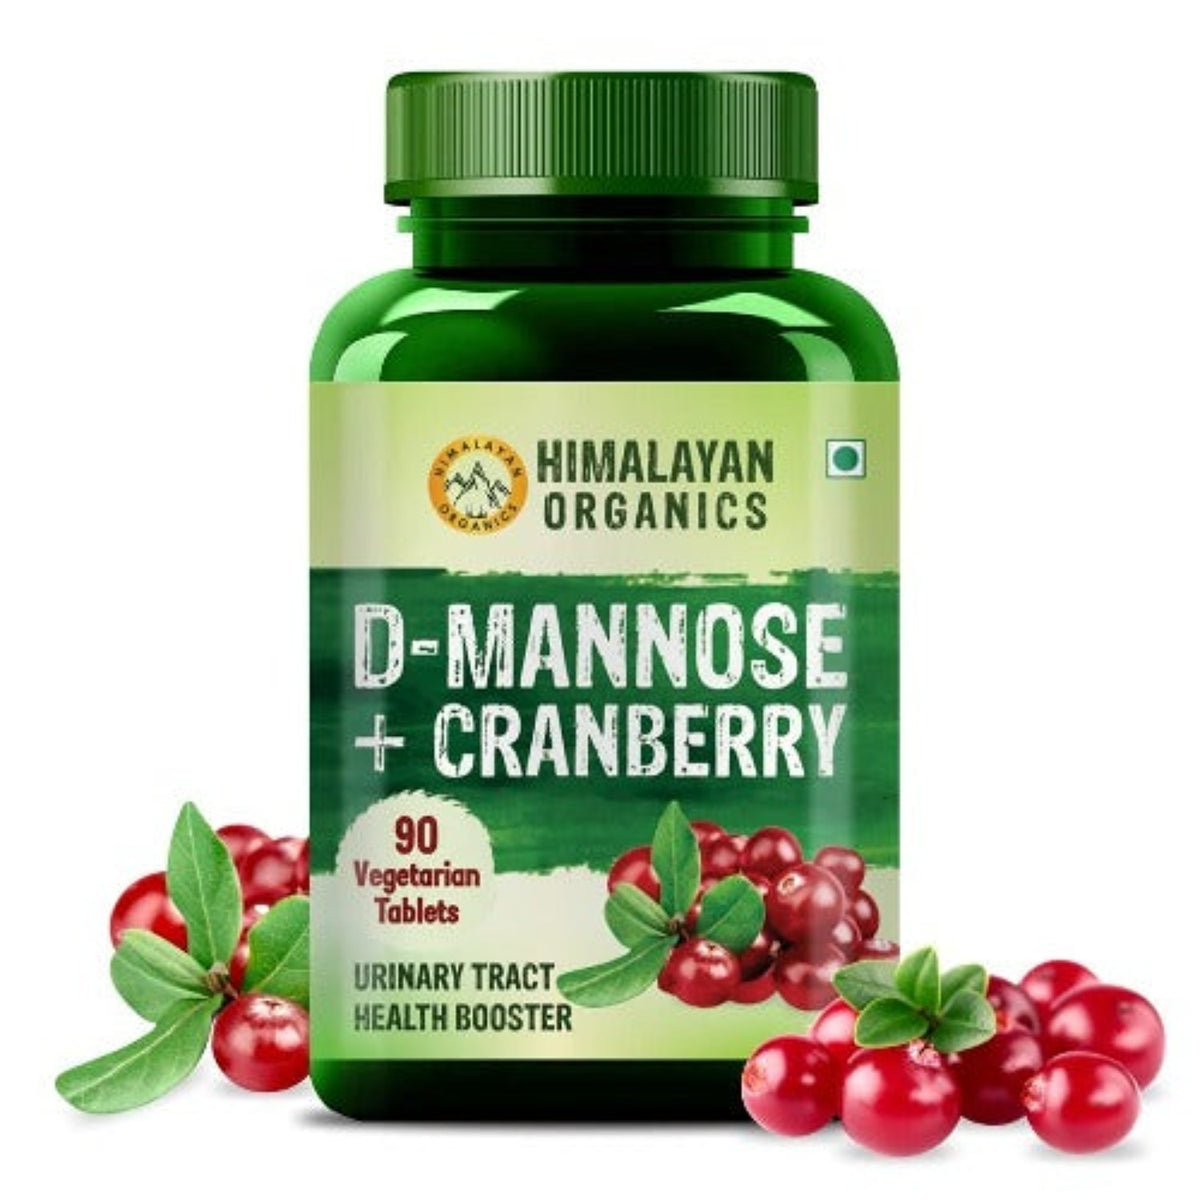 Himalayan Organics D-MANNOSE + CRANBERRY - Antioxidantienreiches Nahrungsergänzungsmittel für Nierengesundheit und Harnwegsinfektionen - 90 Tabletten